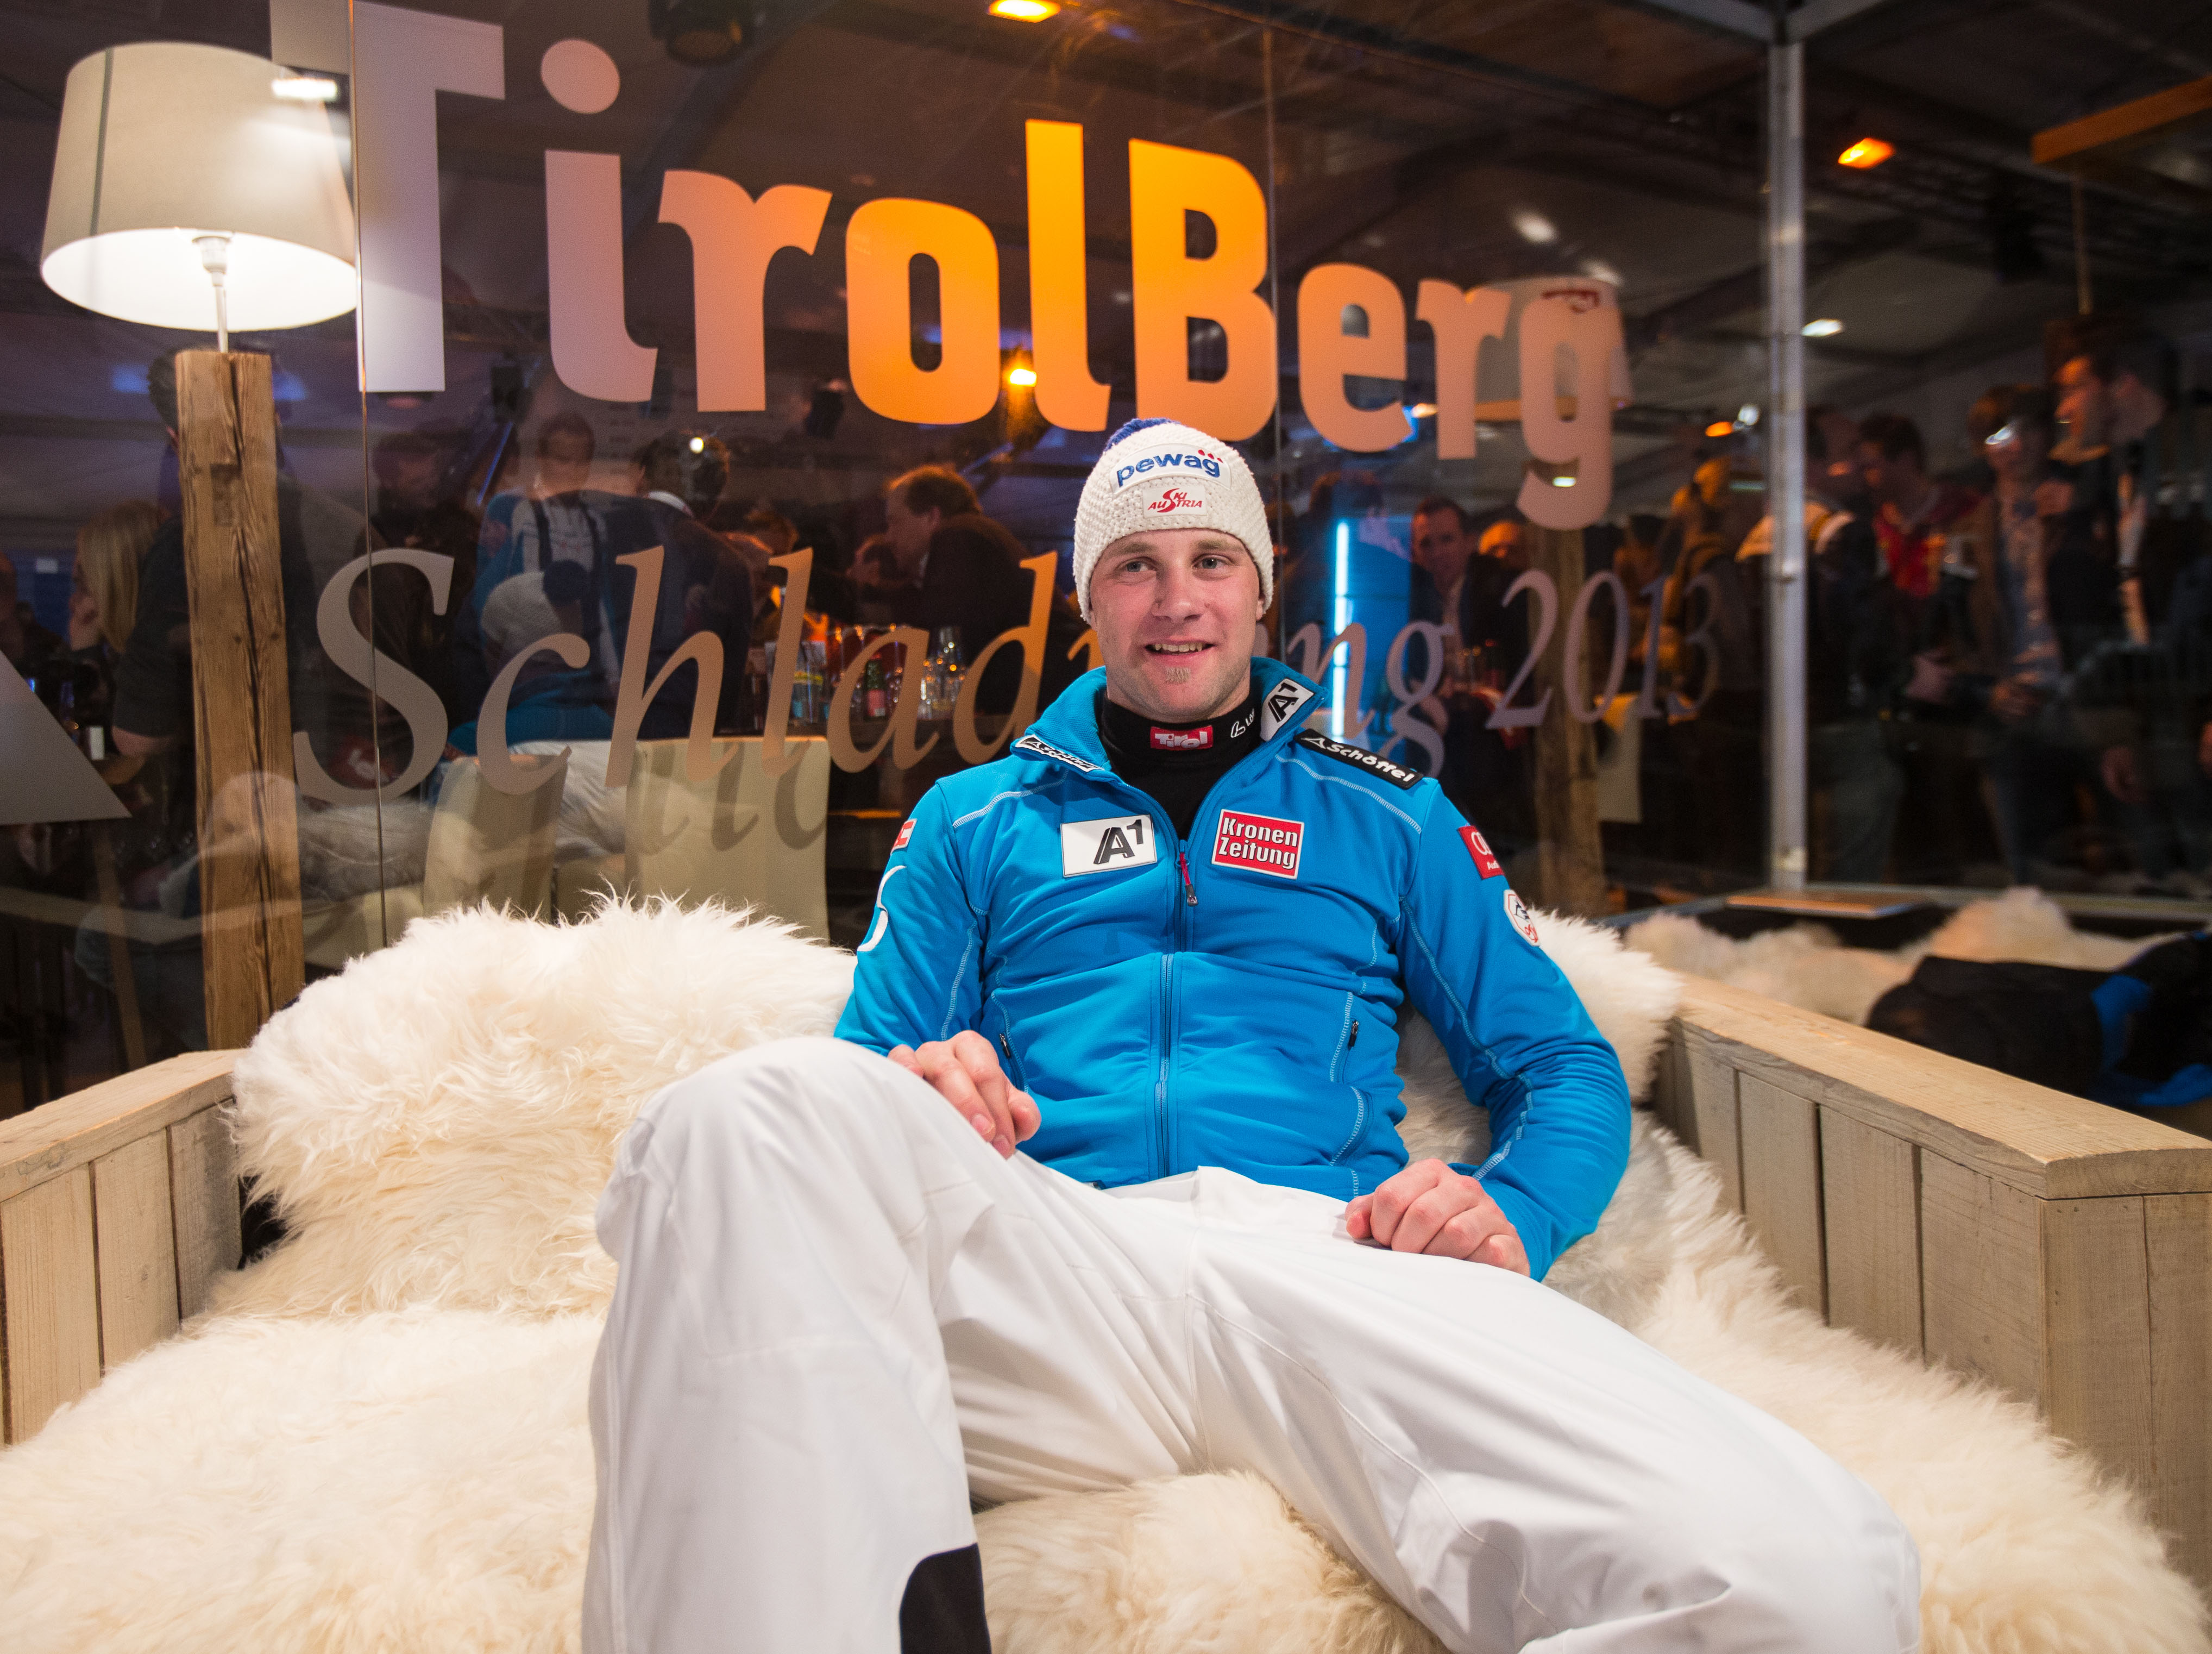 Romed Baumann kam überglücklich und erleichtert im TirolBerg an, wo er seine Bronzemedaille feierte